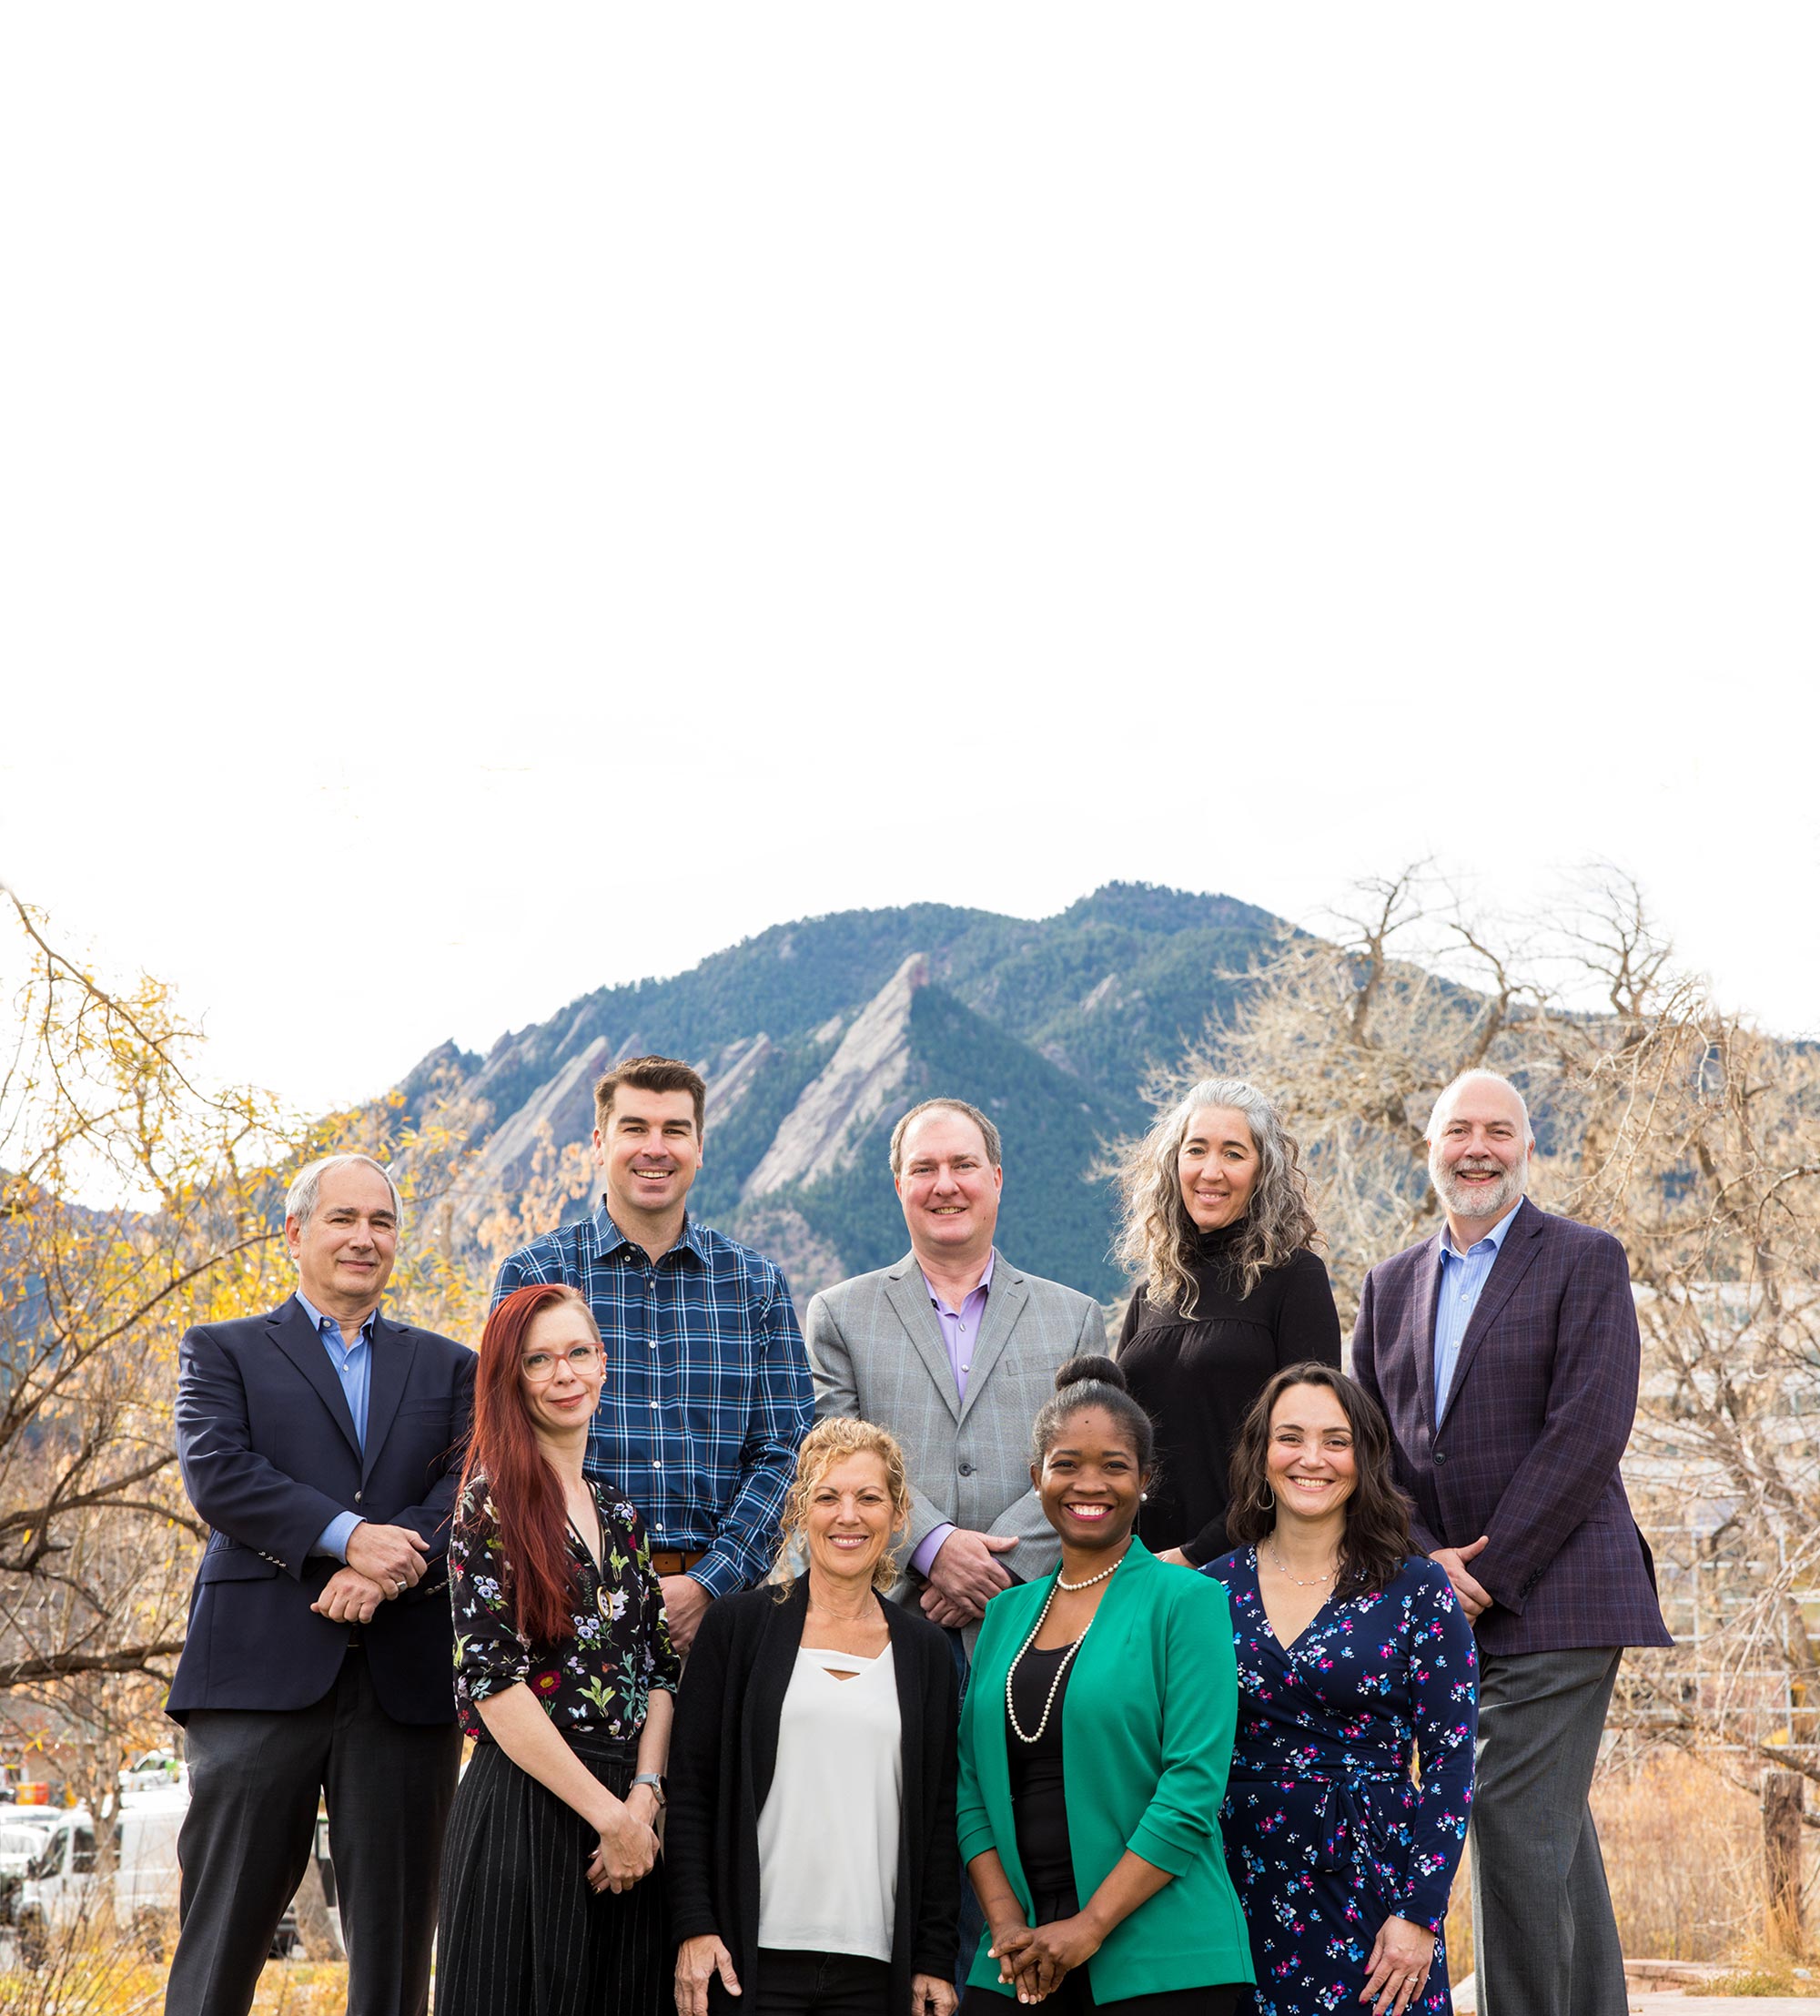 Boulder City Council group photo